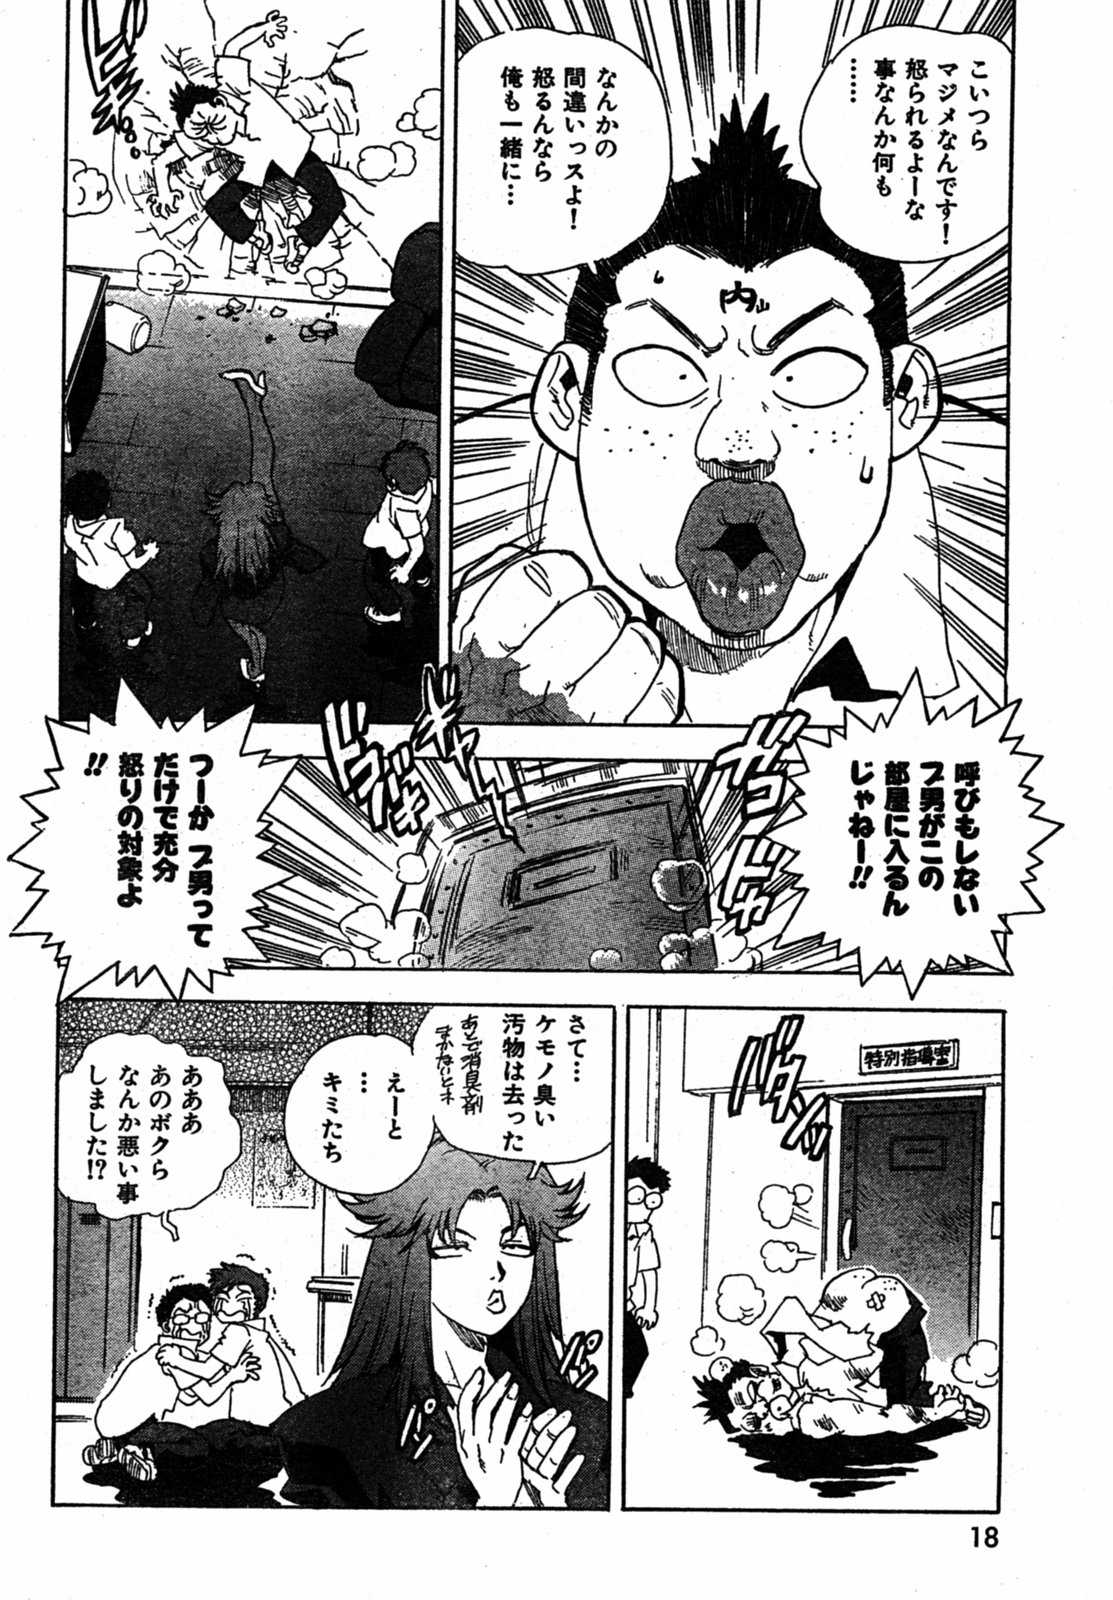 [2005.08.15]Comic Kairakuten Beast Volume 3 